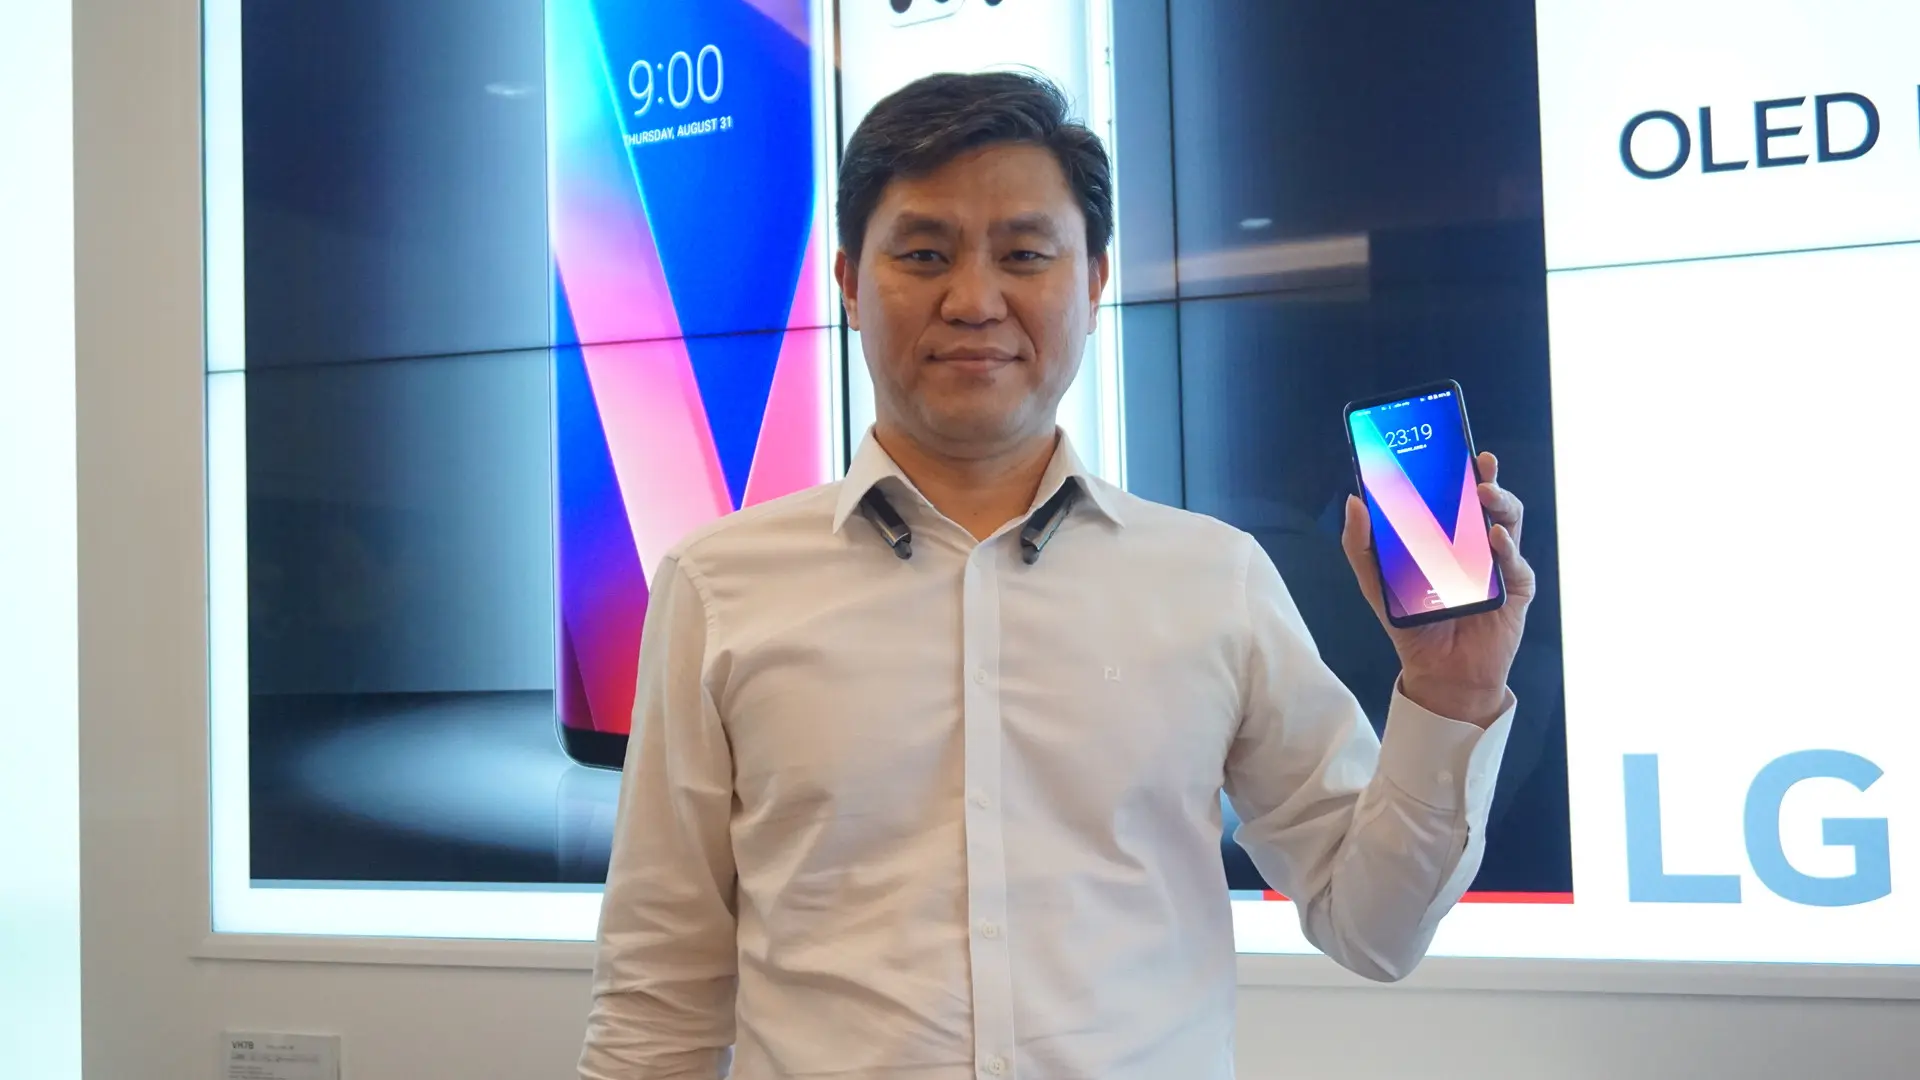 Head of LG Mobile Communications Indonesia Hee-gyun Jang membawa LG V30+ yang bakal dijual di Indonesia, Desember 2017 (/ Agustin Setyo W)